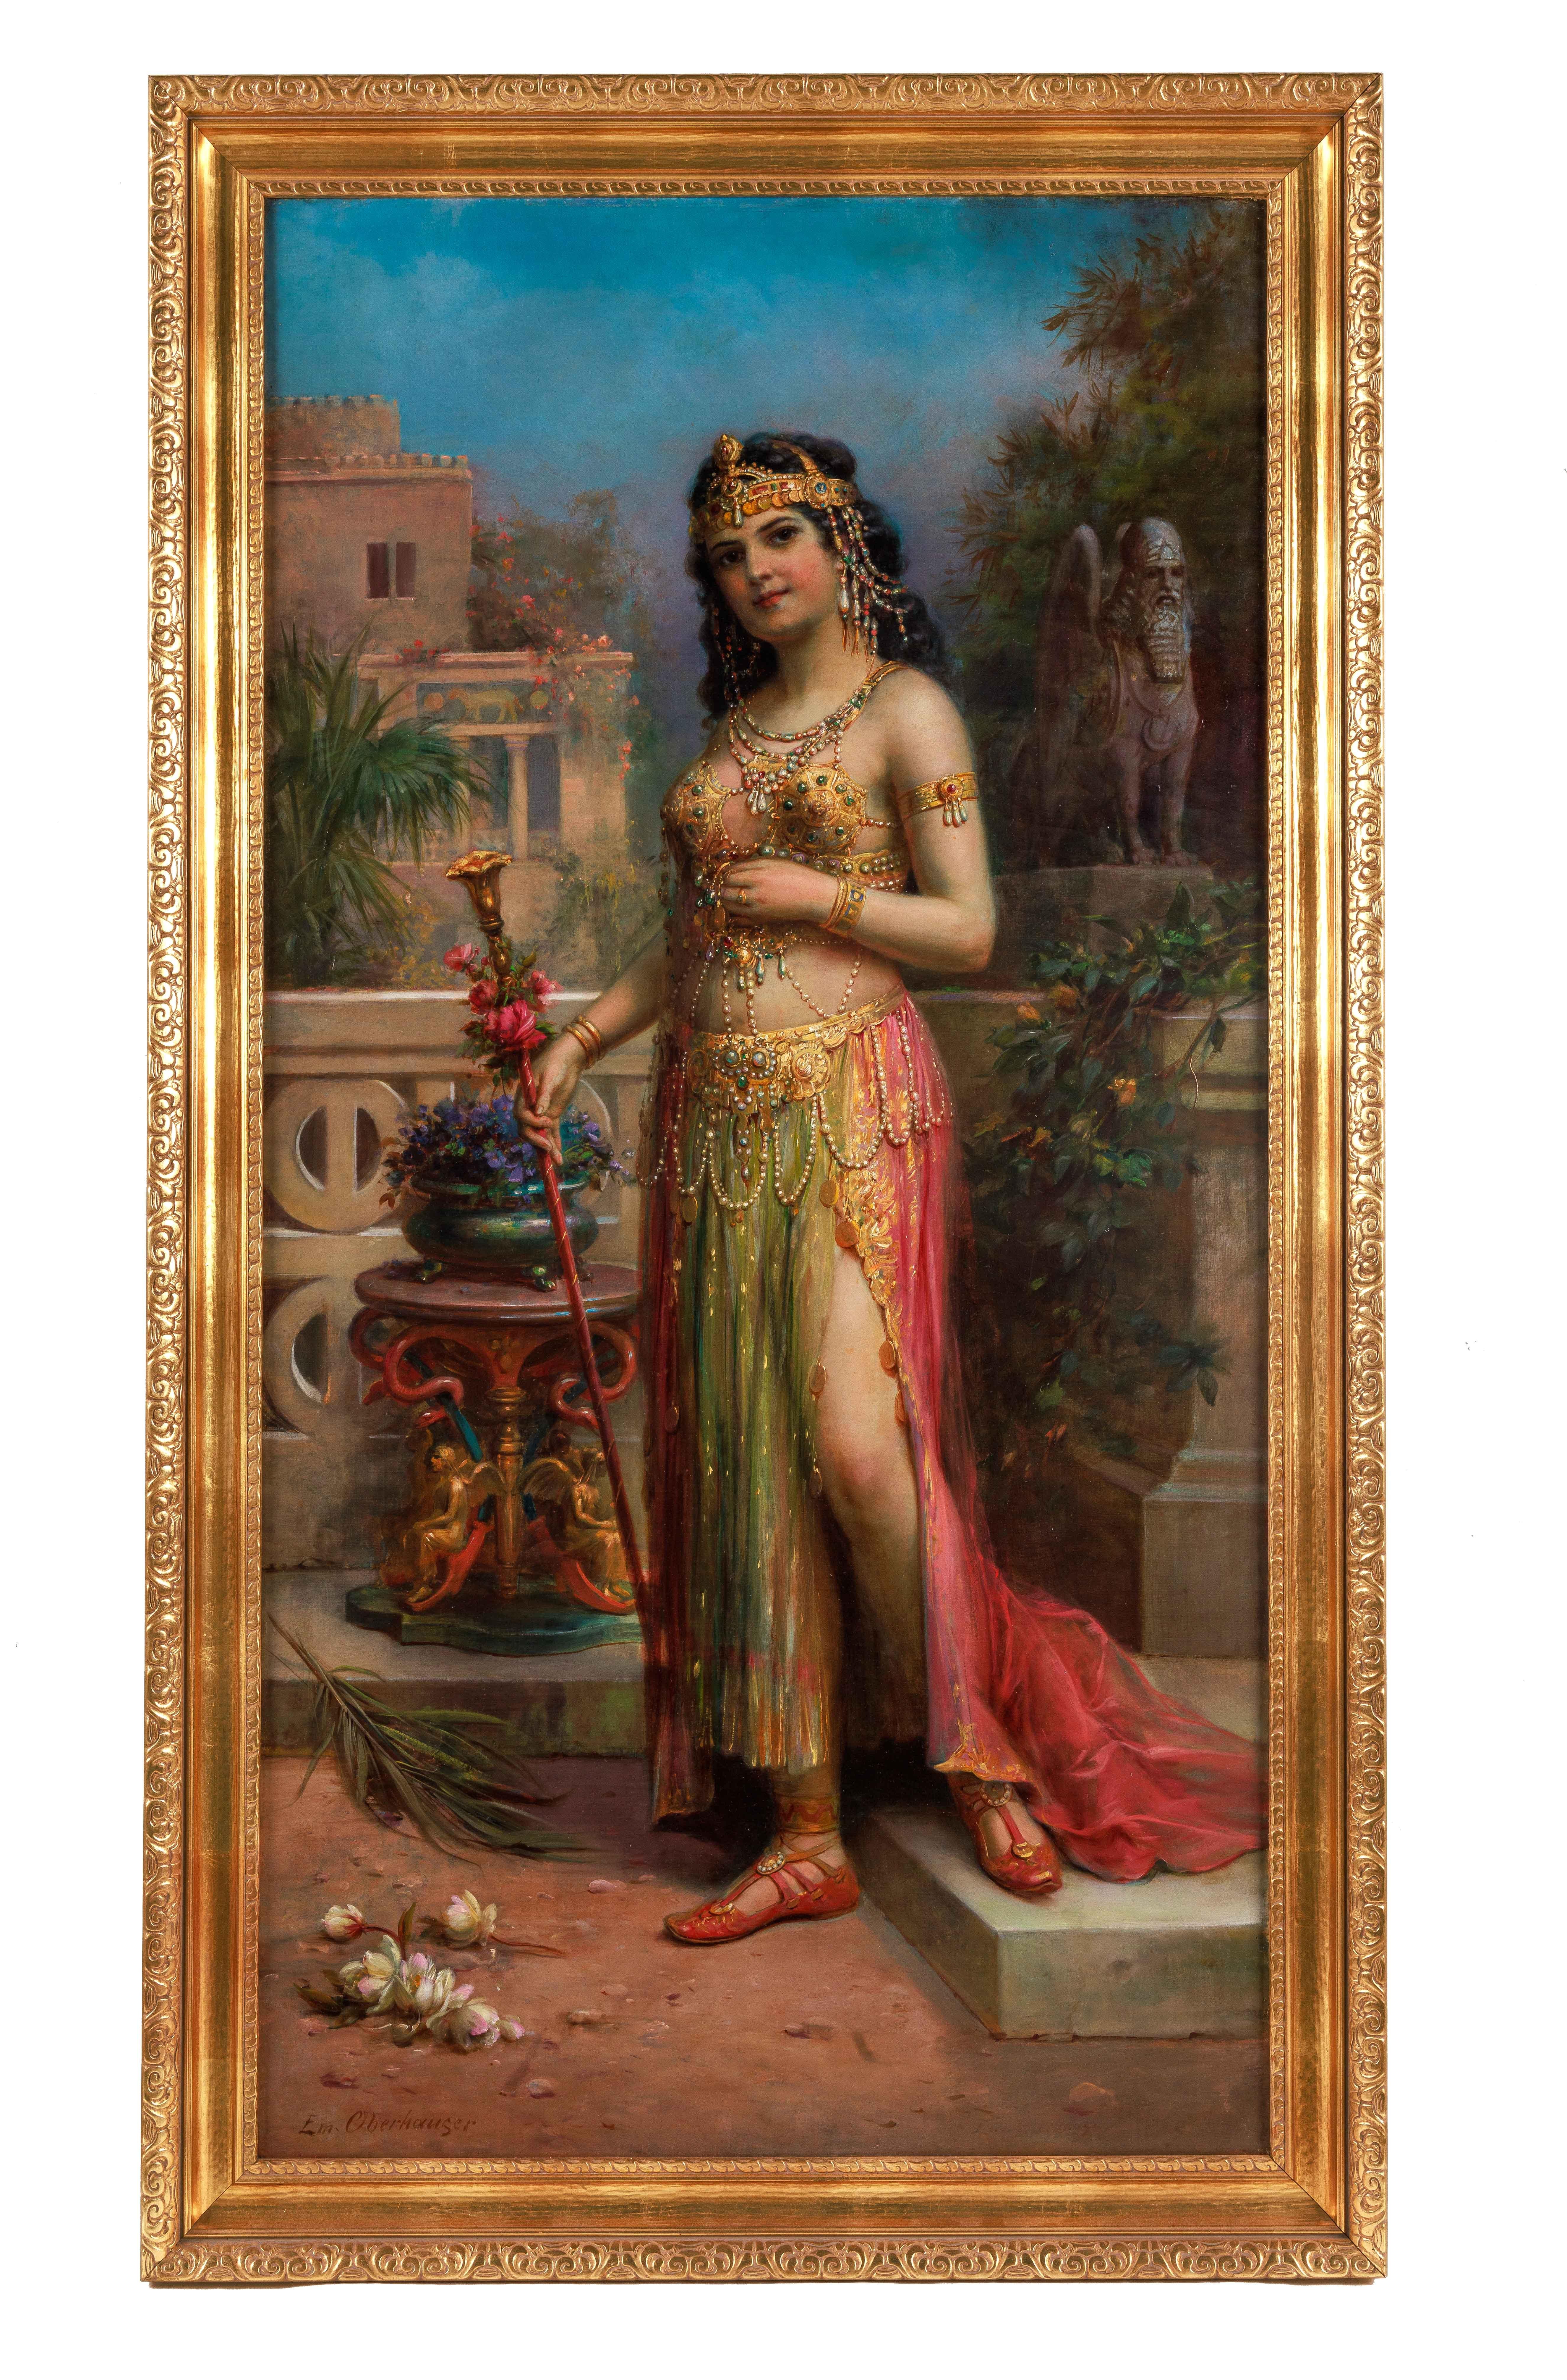 Emanuel Oberhauser (Österreicher, 1854 - 1919) Eine außergewöhnliche Qualität Öl auf Leinwand Gemälde einer jungen orientalischen Königin / Odaliske. 19. Jahrhundert, um 1885

Dieses meisterhaft gemalte Kunstwerk zeigt das Porträt einer jungen Frau